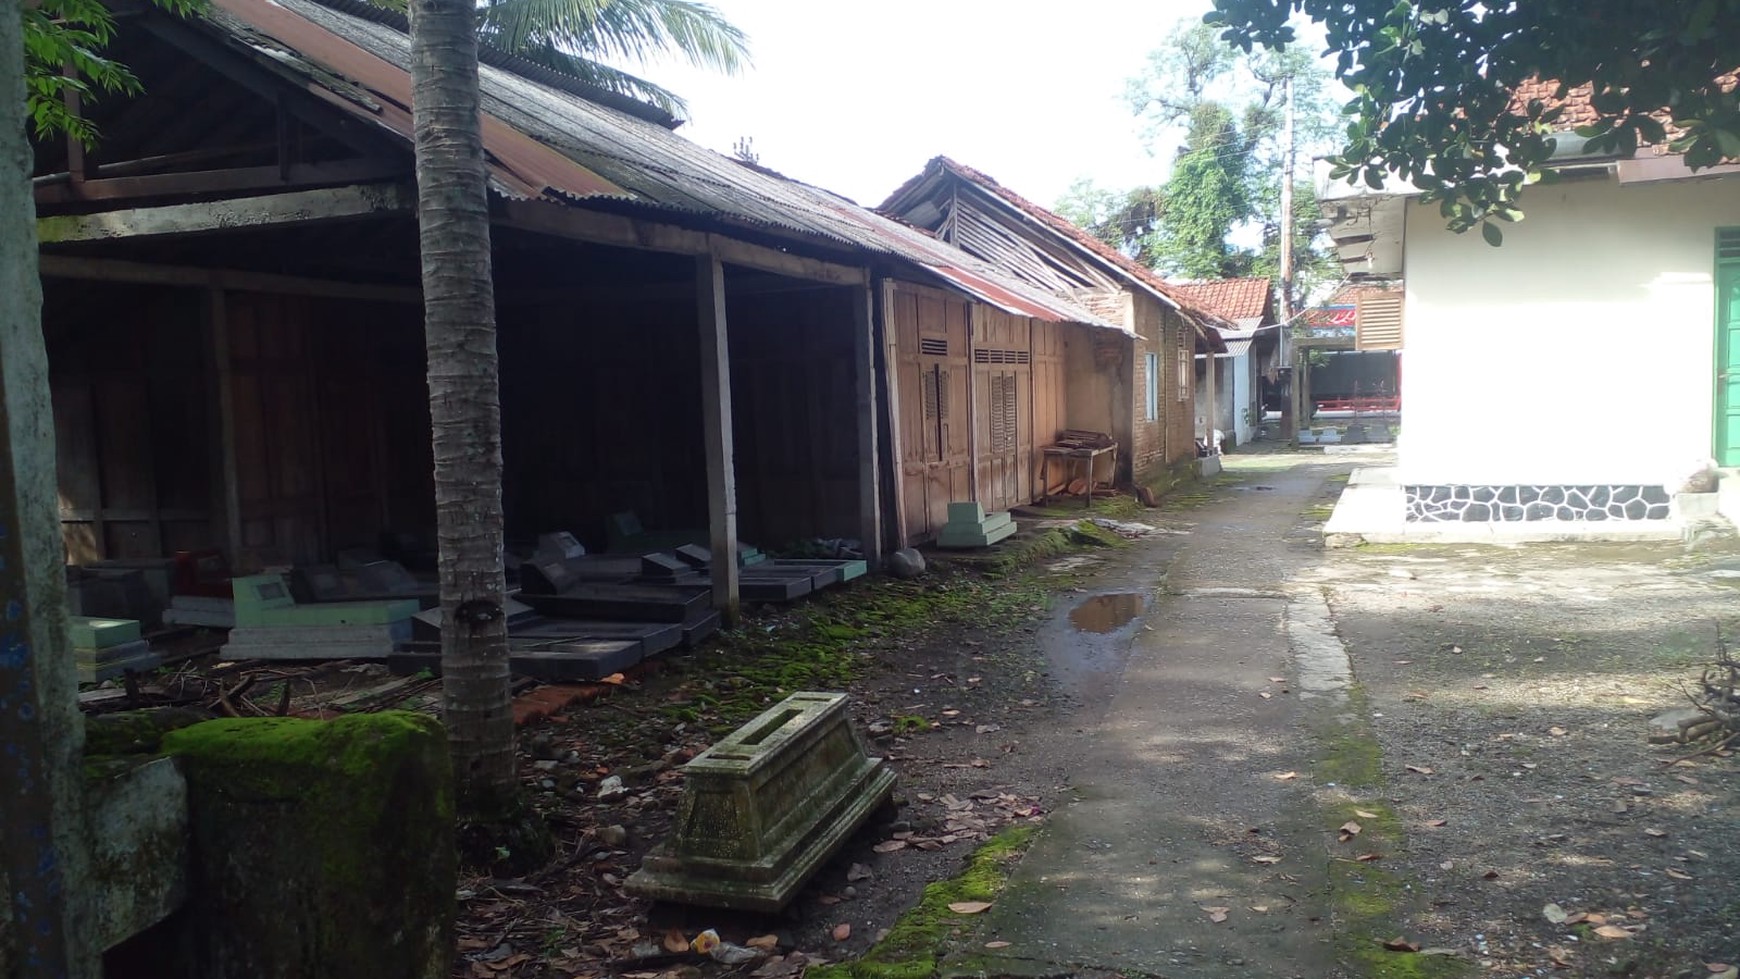 Tanah & Bangunan Luas 498 Meter Persegi Lokasi Kebumen Jawa Tengah 